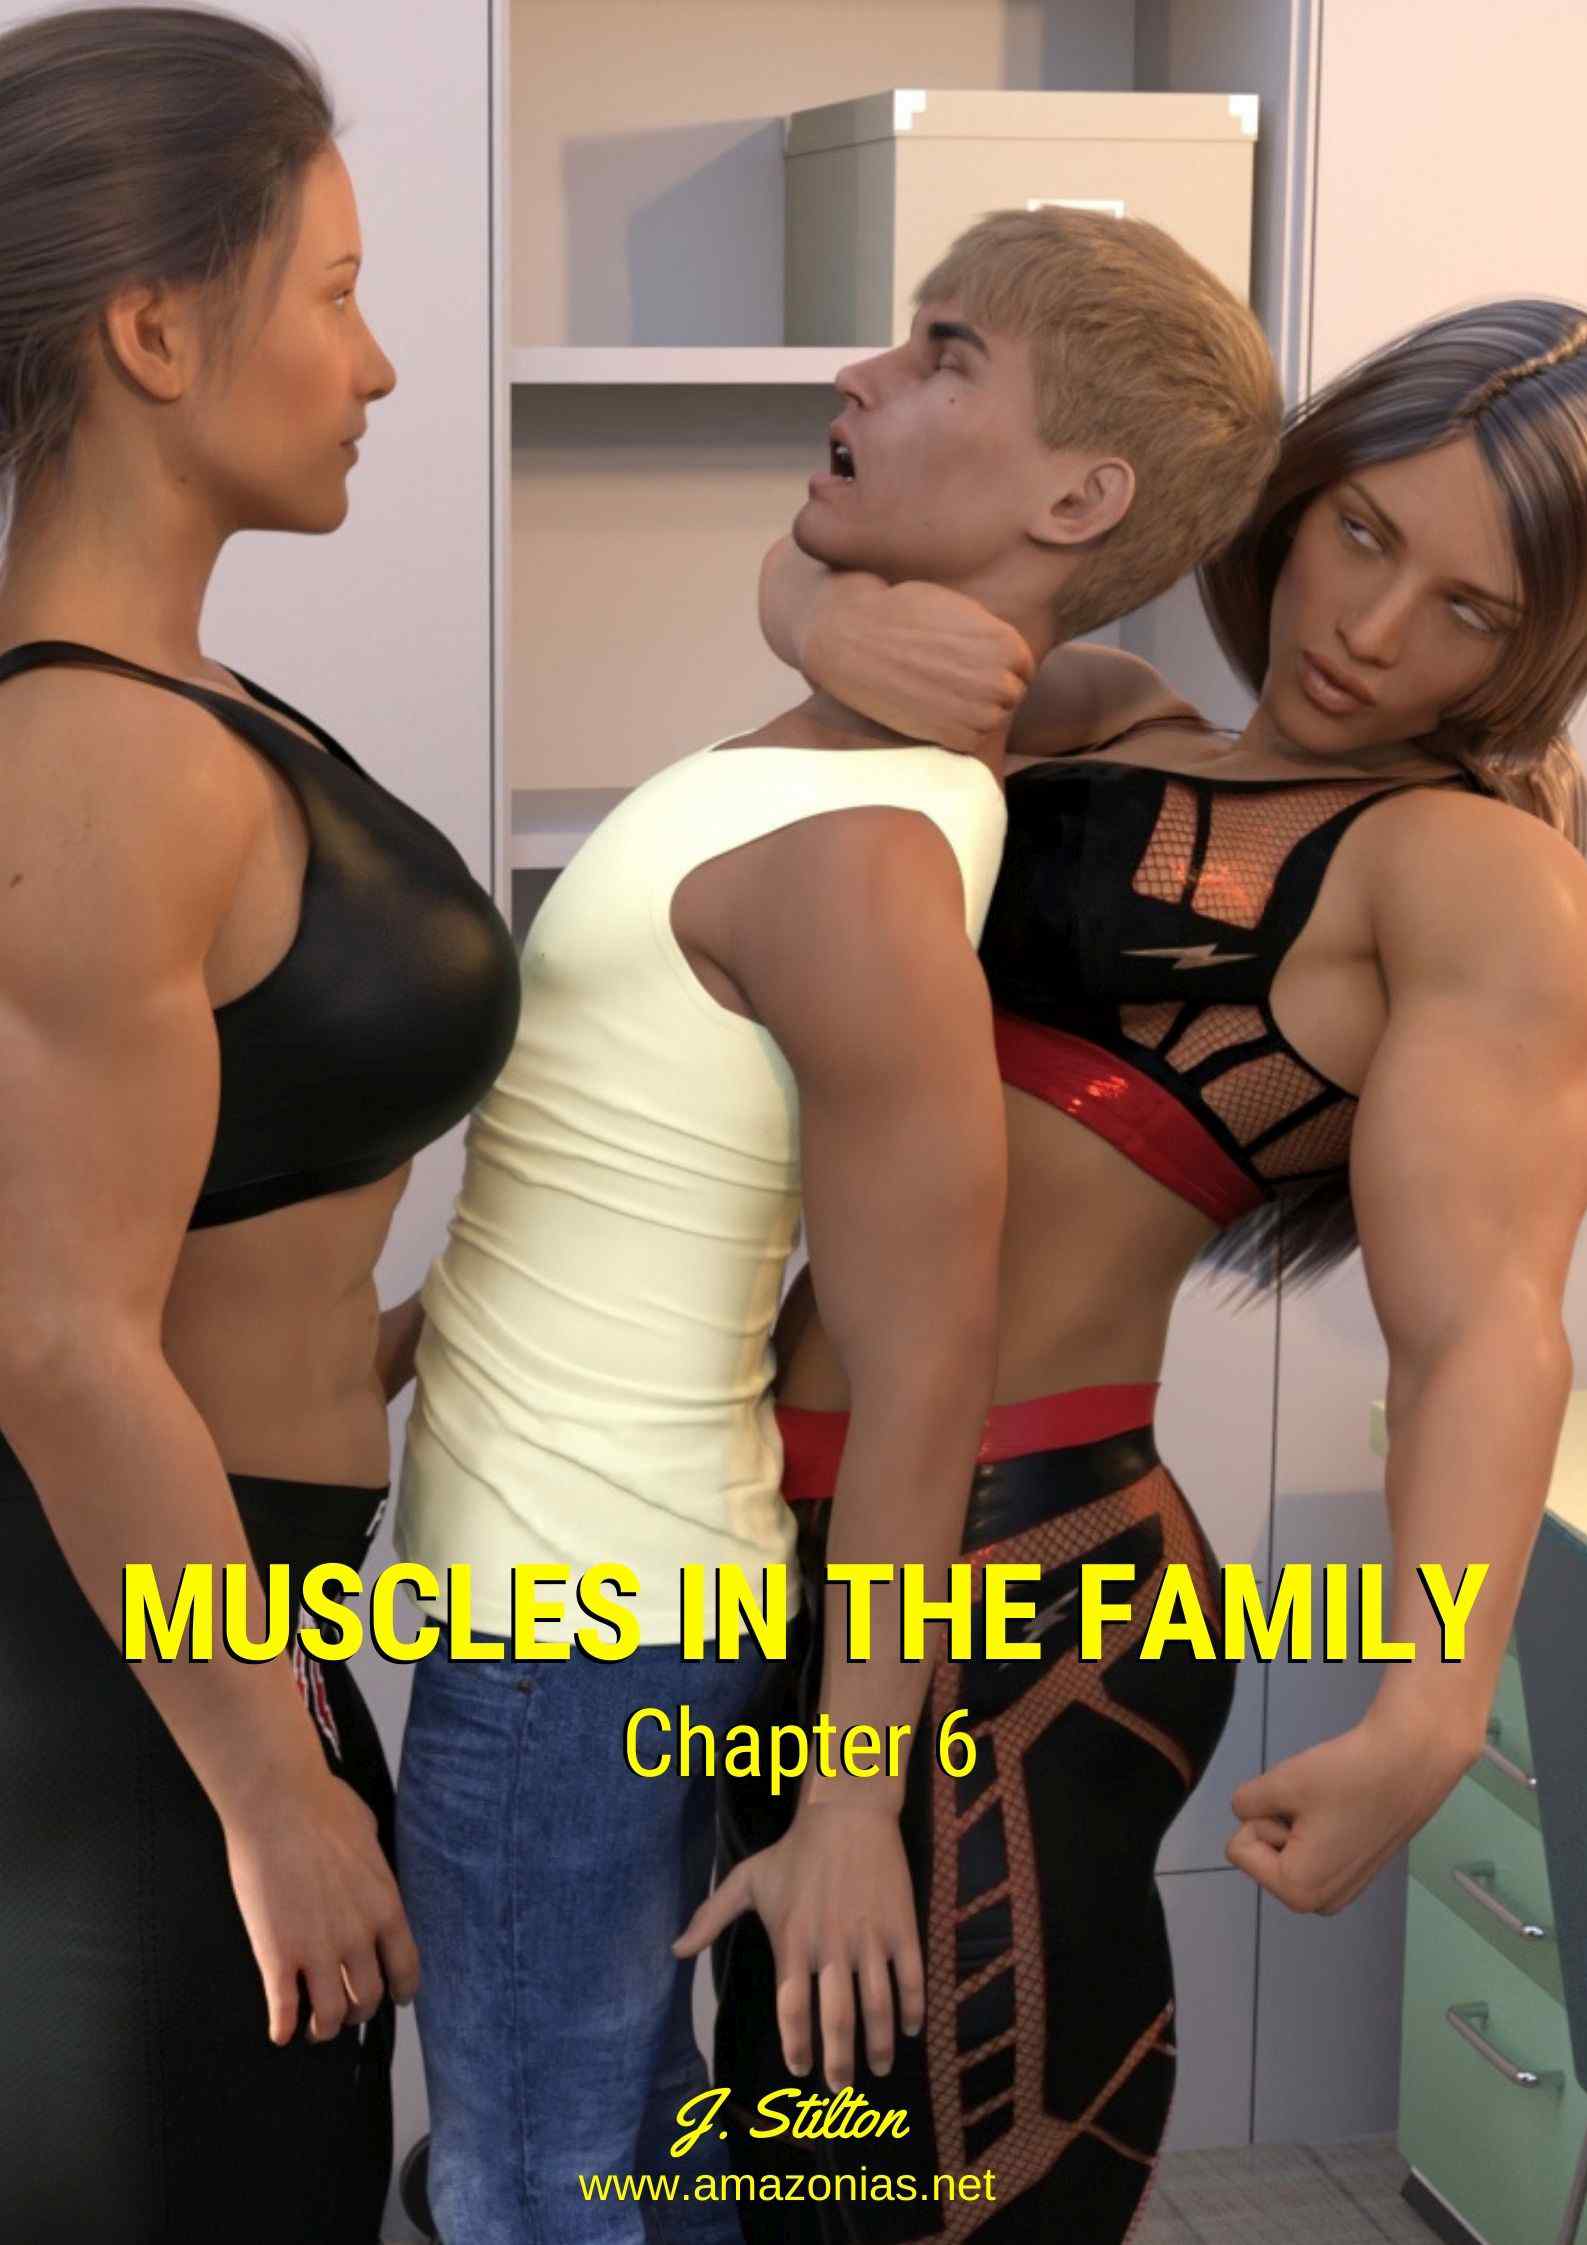 two musclegirls dominating guy